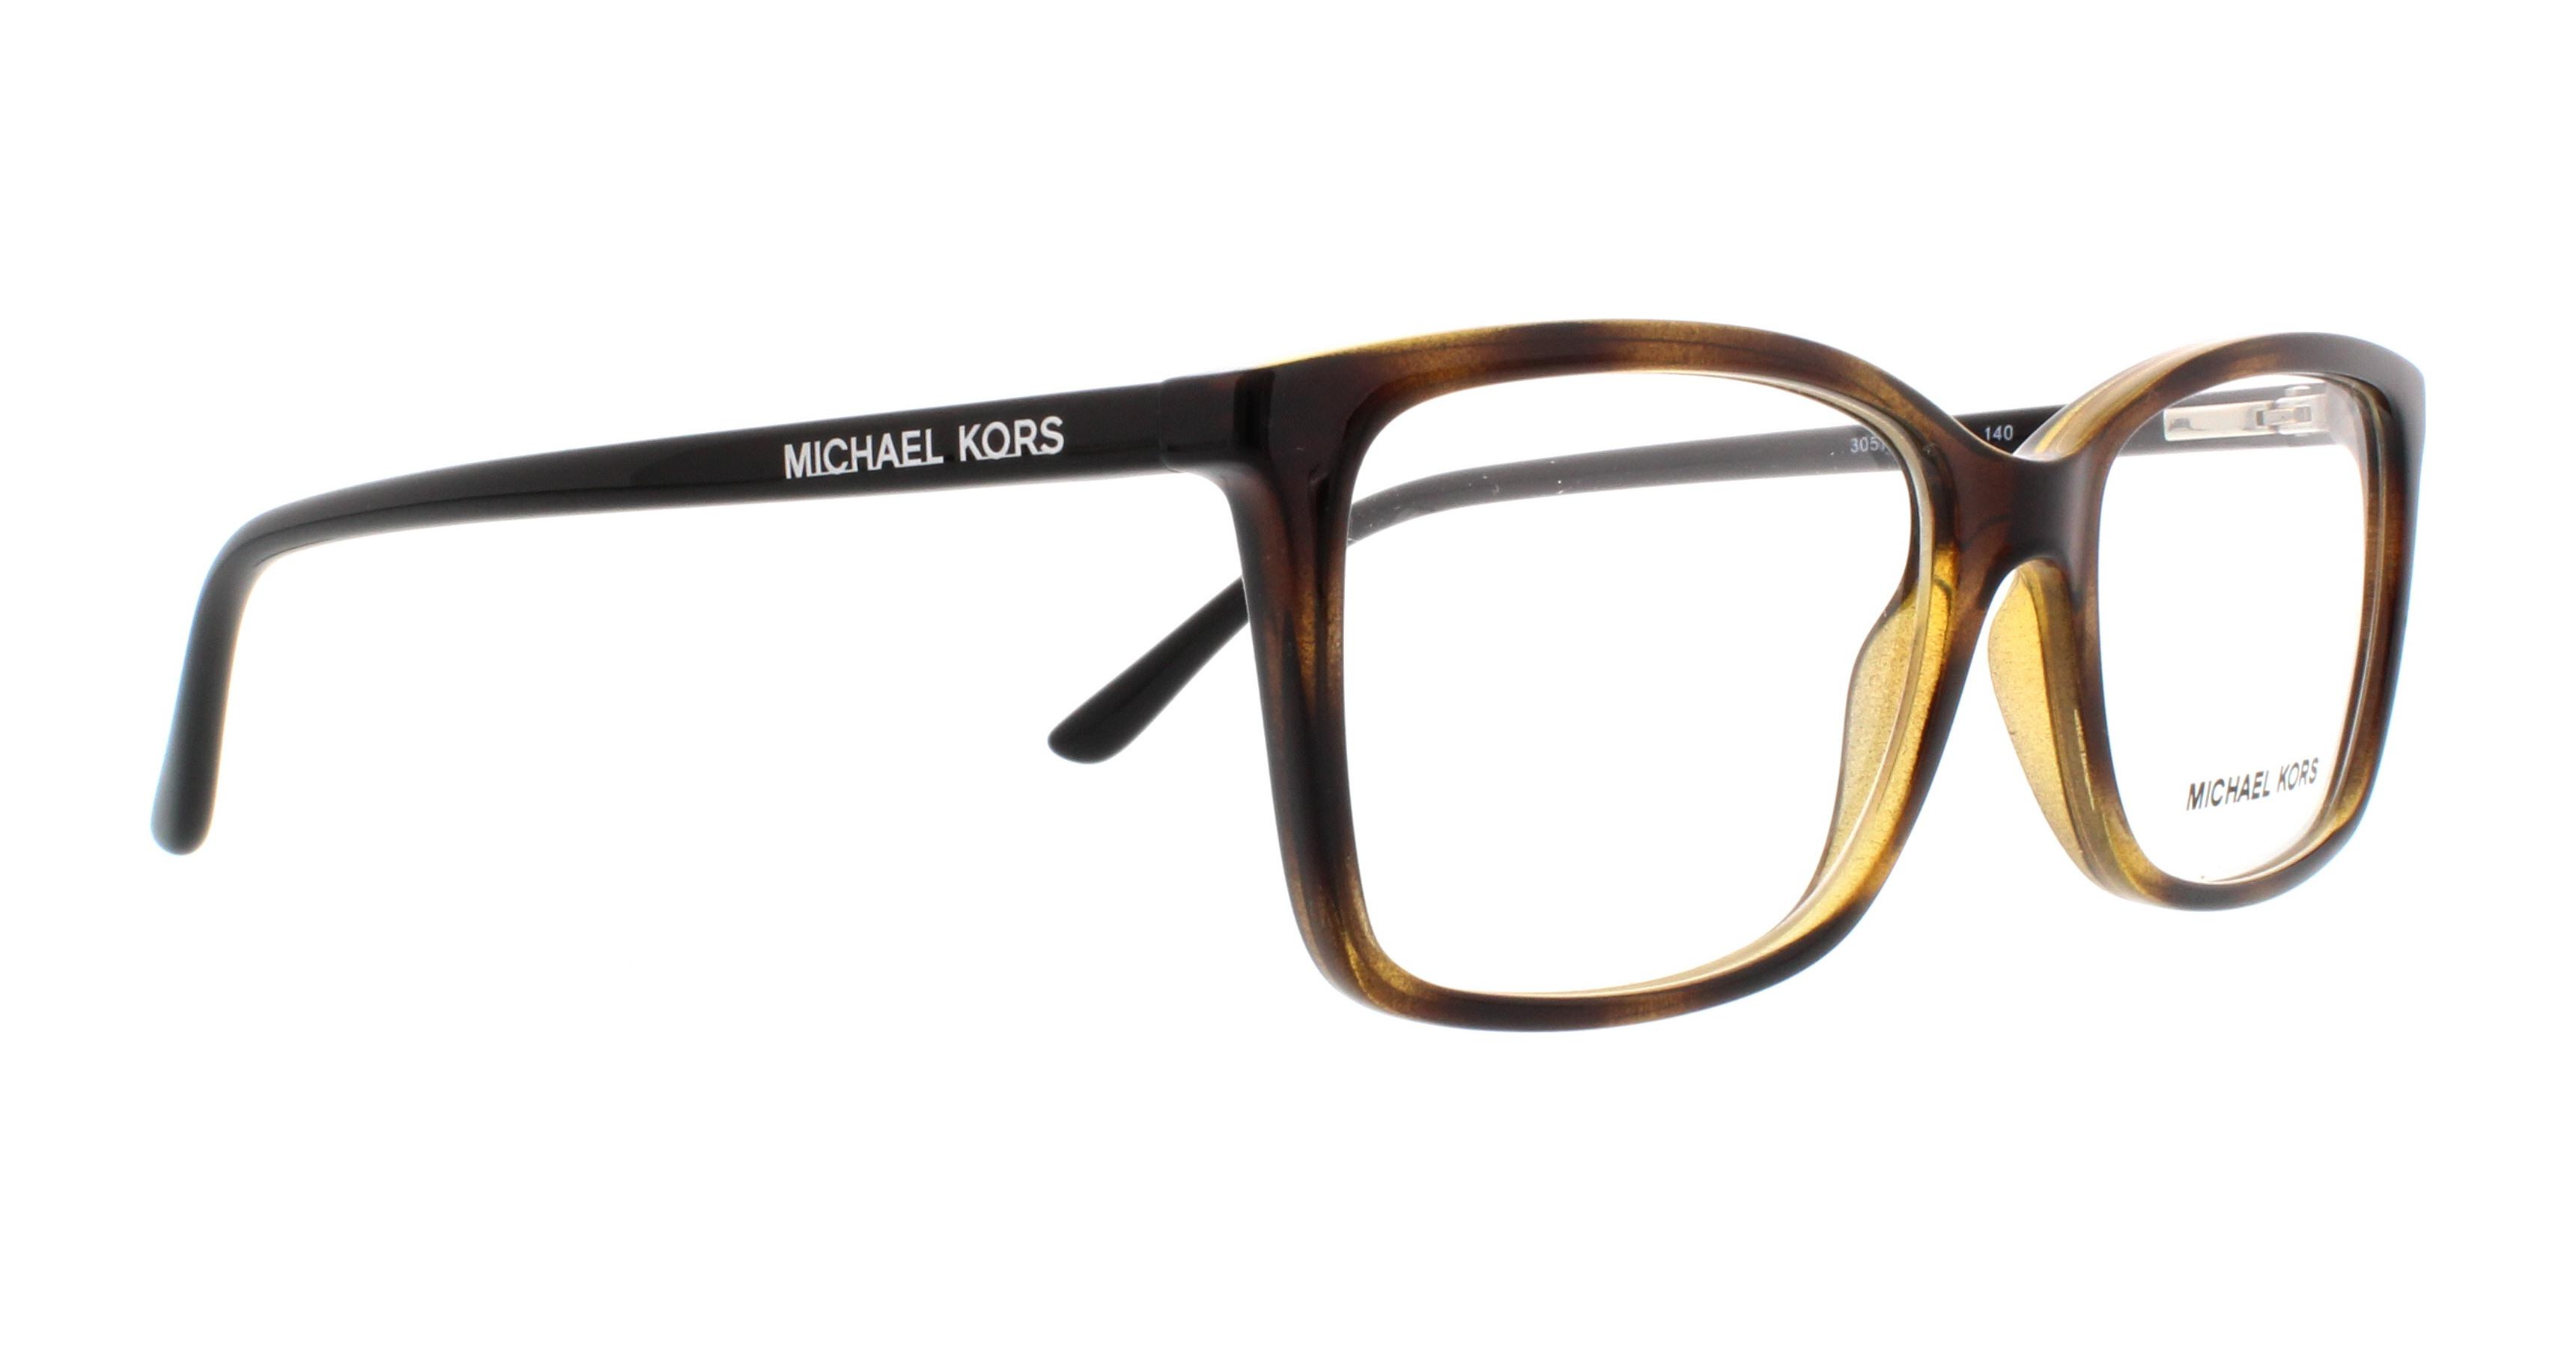 Designer Frames Outlet. Michael Kors Eyeglasses MK8013